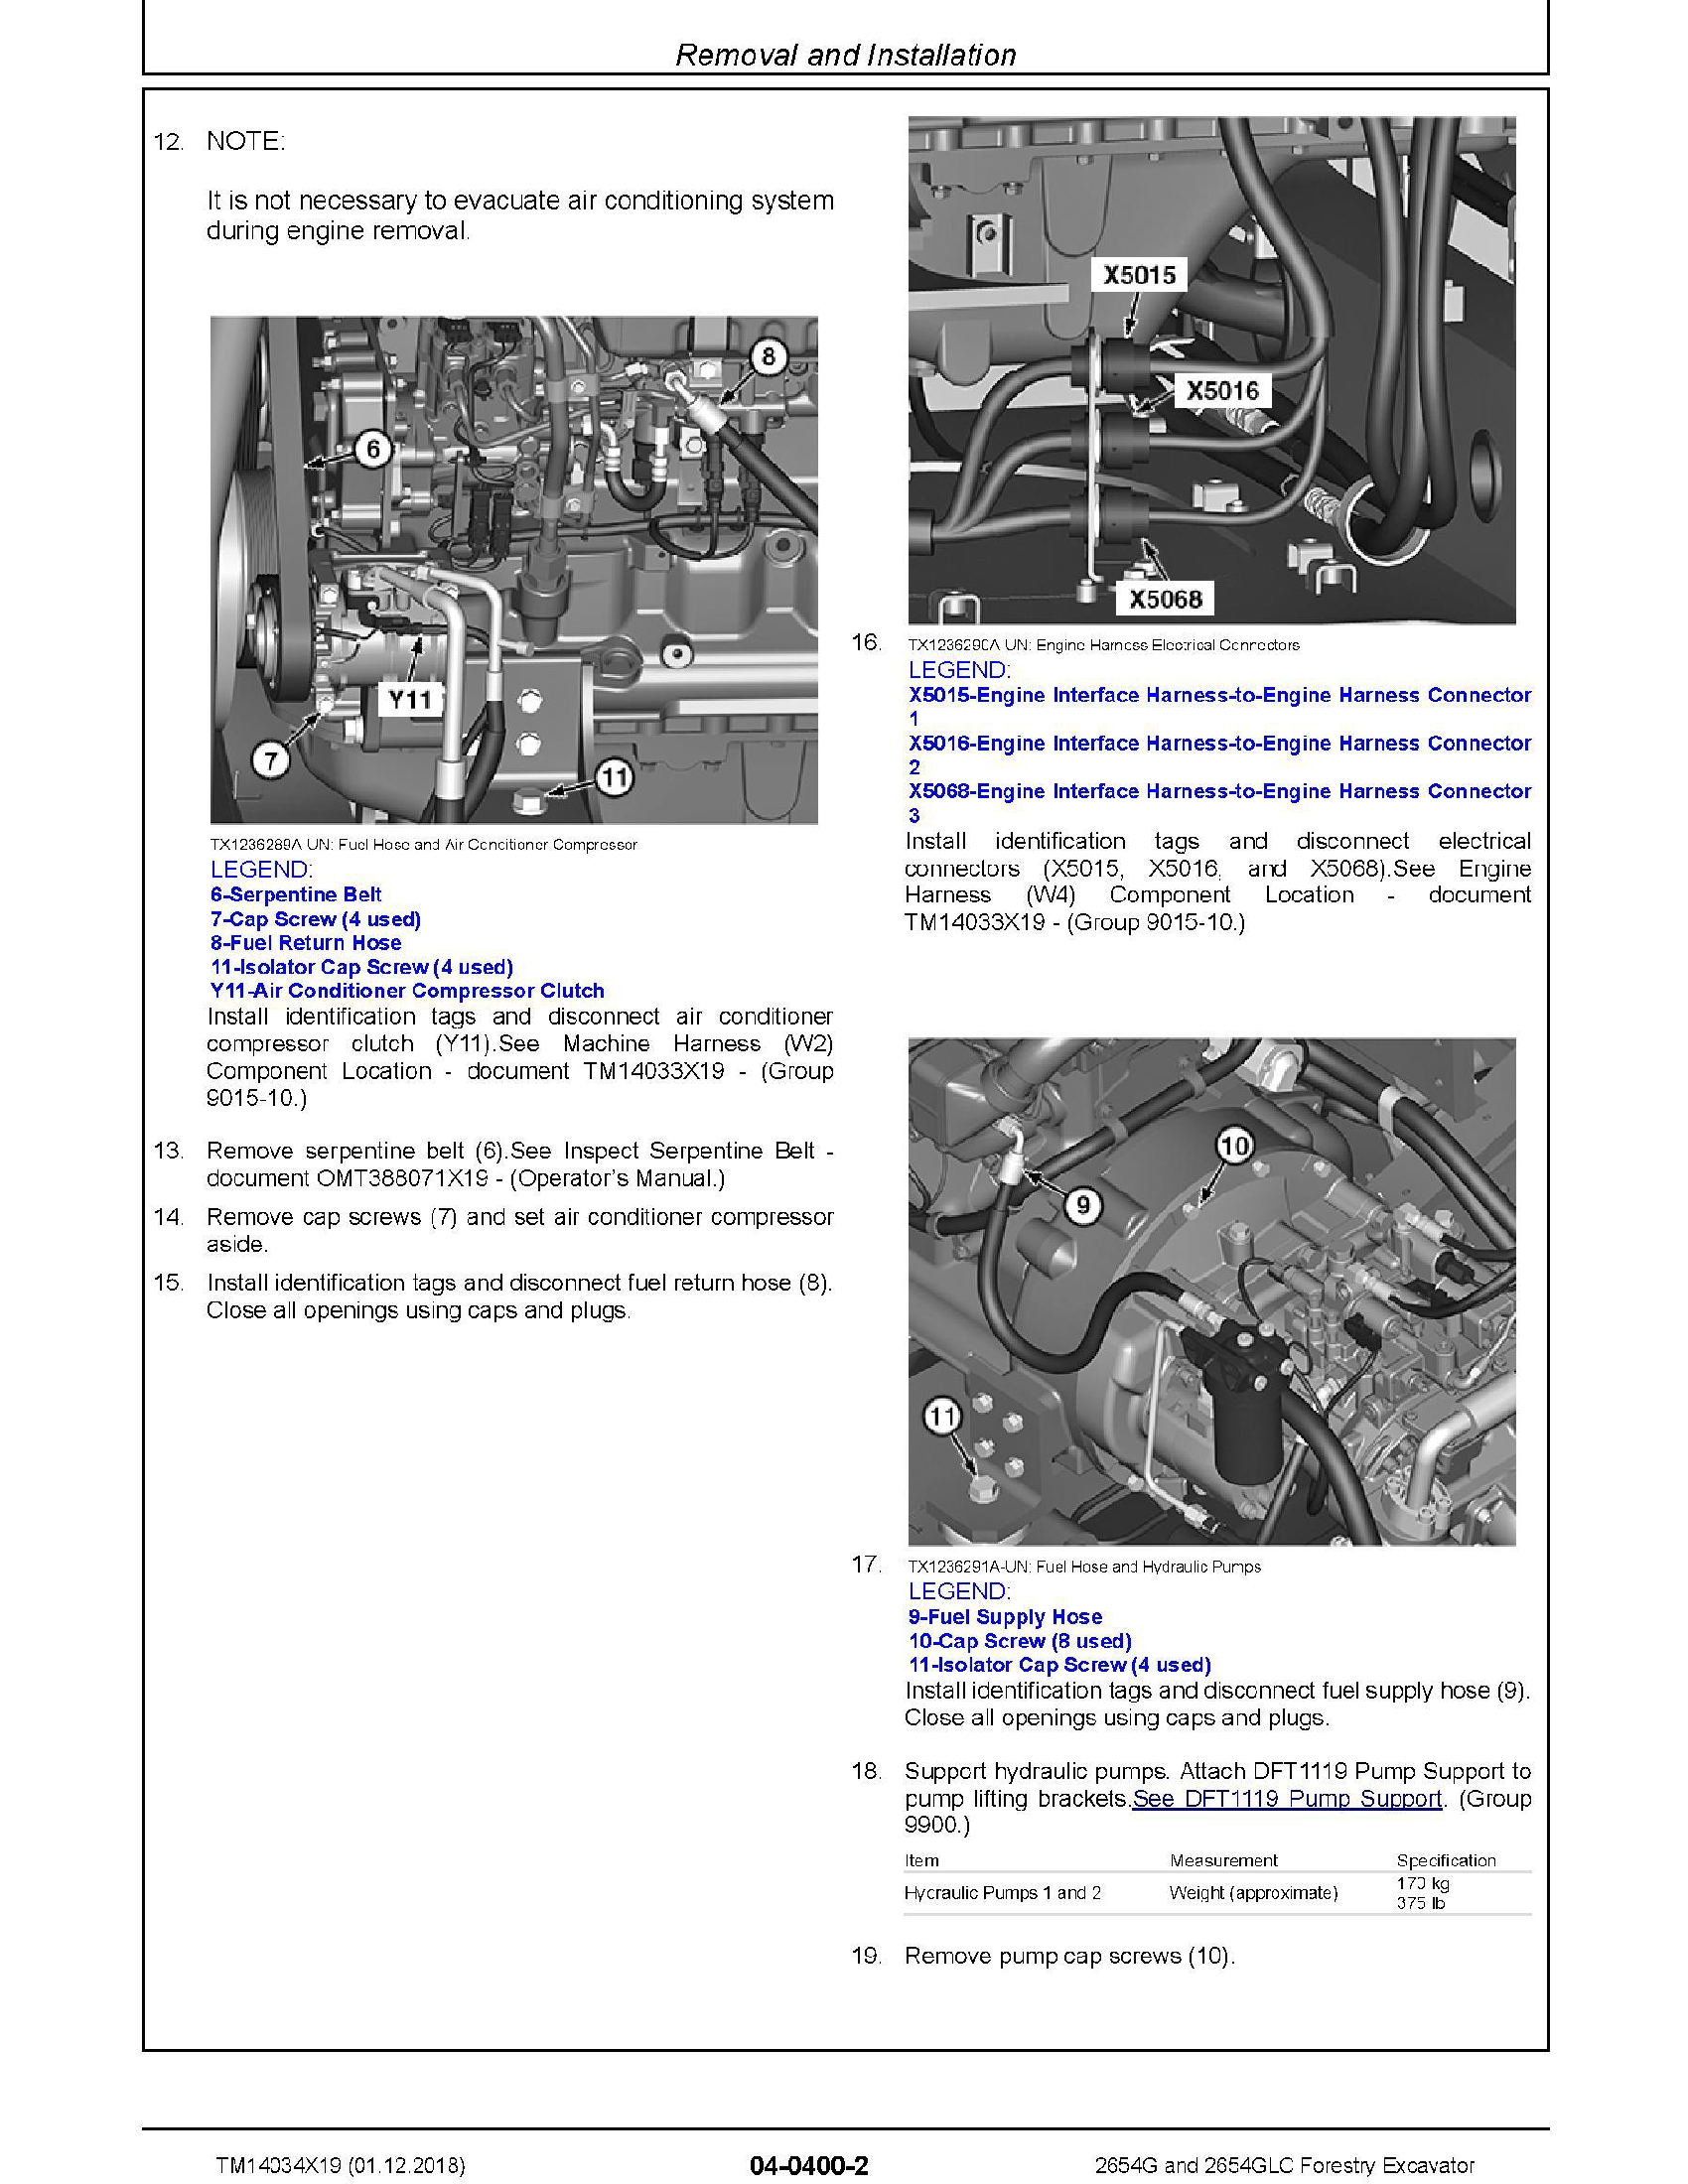 John Deere 1434C manual